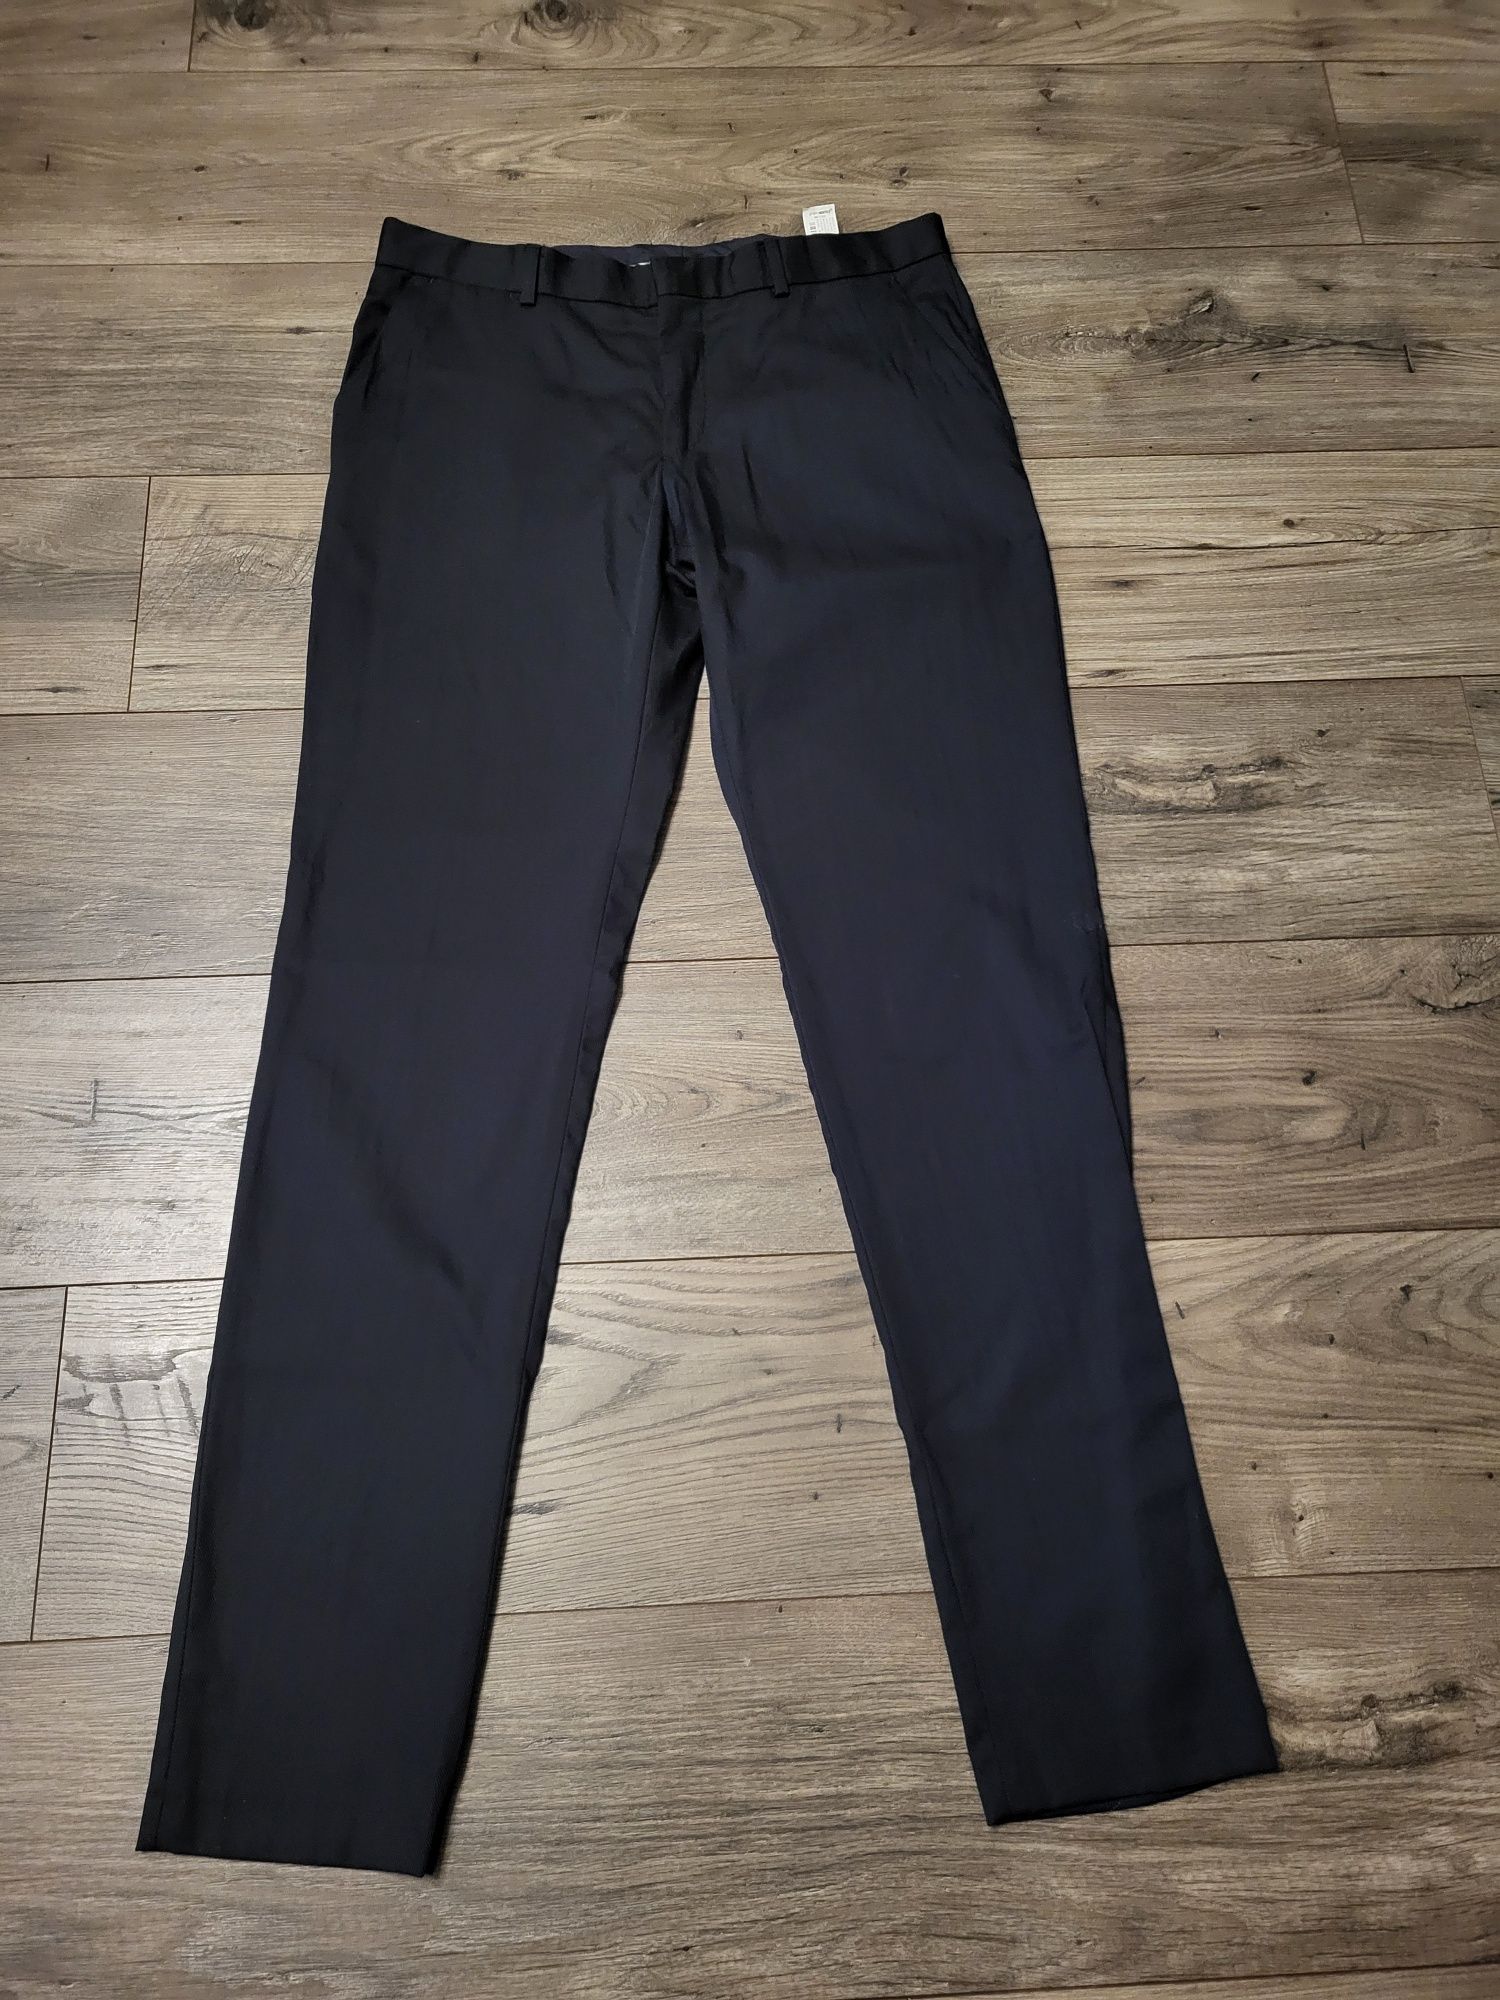 Чоловічі штани Zara, темно-синього кольору 48р(укр.) eur 42